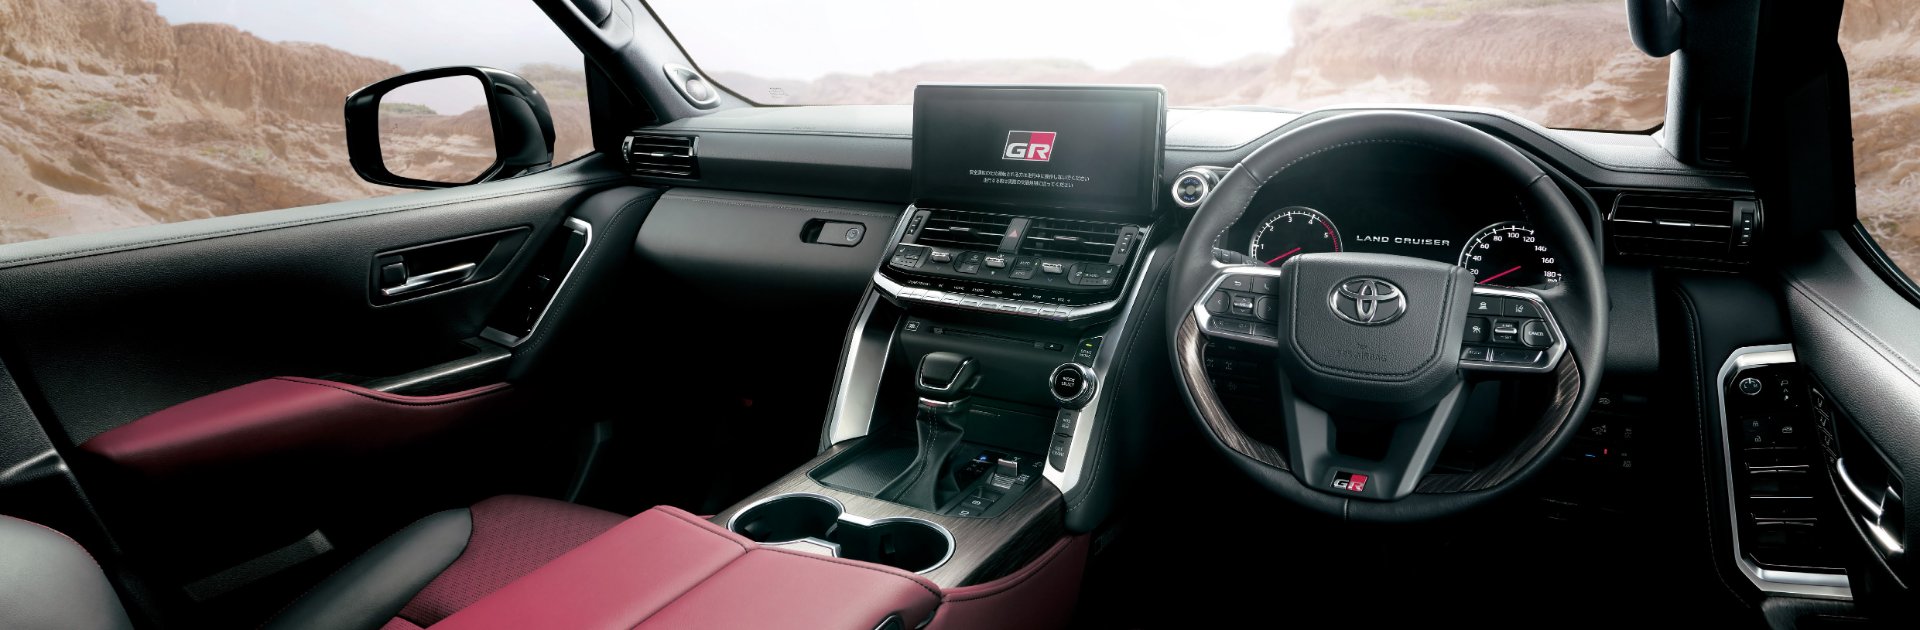 Chi tiết Toyota Land Cruiser 300 GR Sport: Giá quy đổi từ 1,6 tỷ, toàn trang bị chơi bời cho đại gia - Ảnh 4.